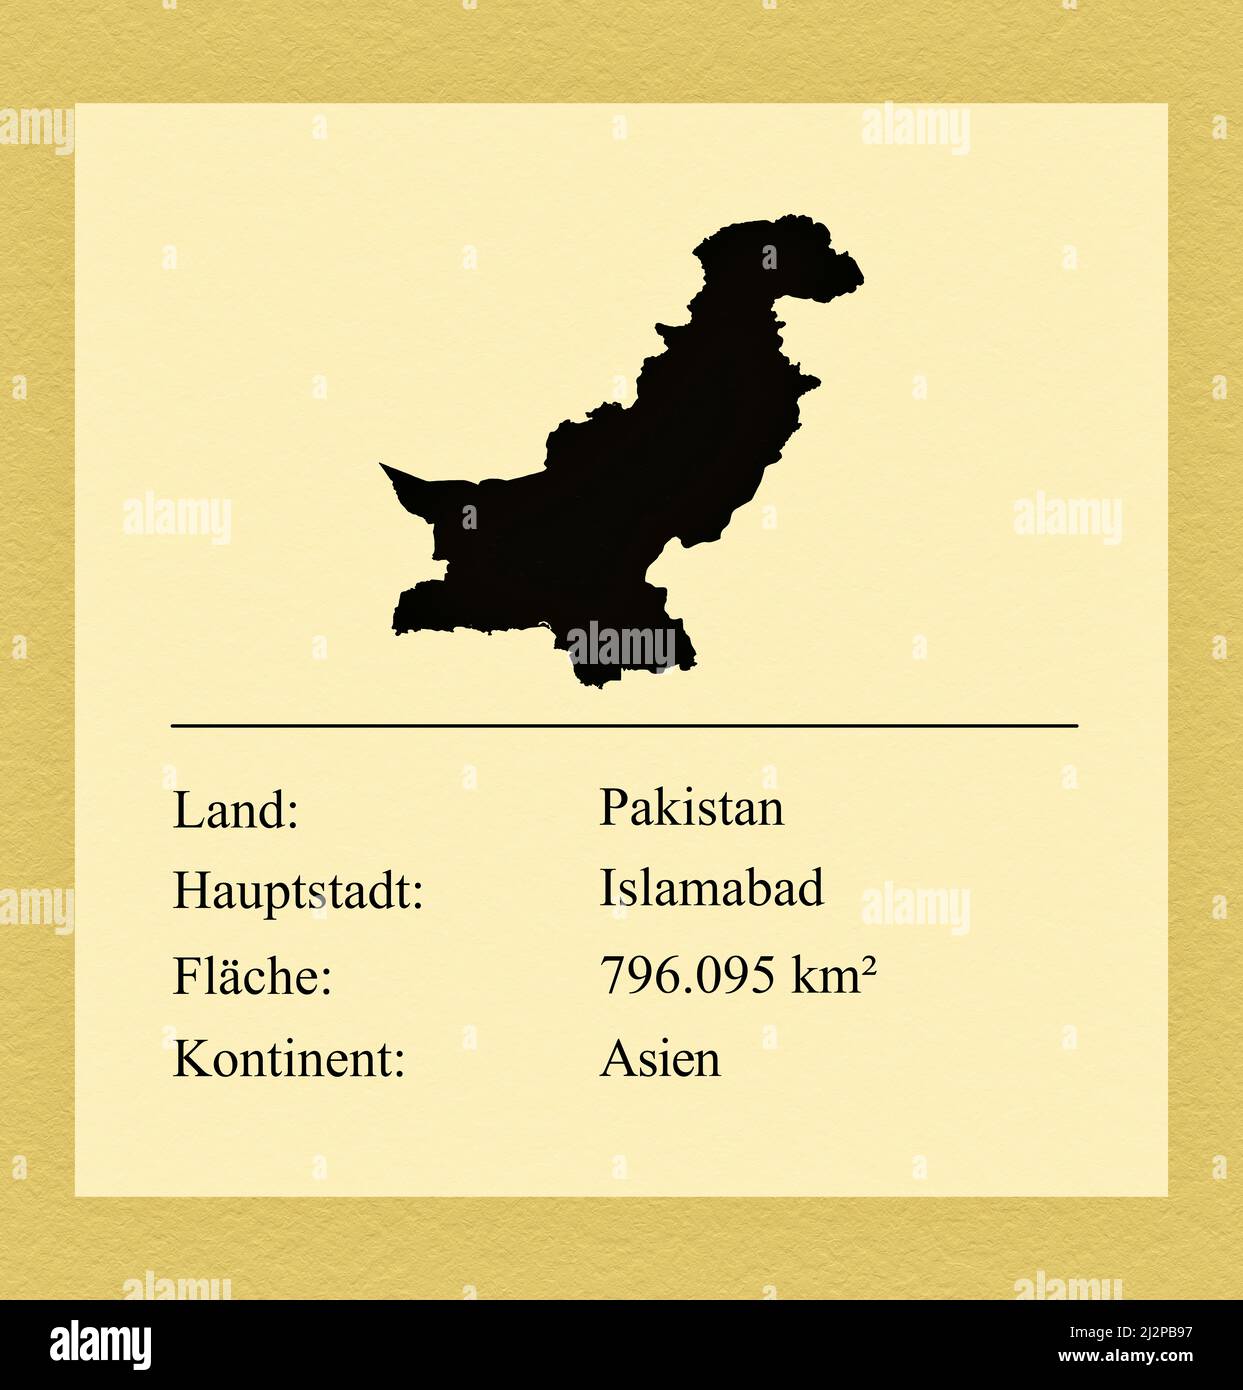 Umrisse des Landes Pakistan, darunter ein kleiner Steckbrief mit Ländernamen, Hauptstadt, Fläche und Kontinent Foto de stock